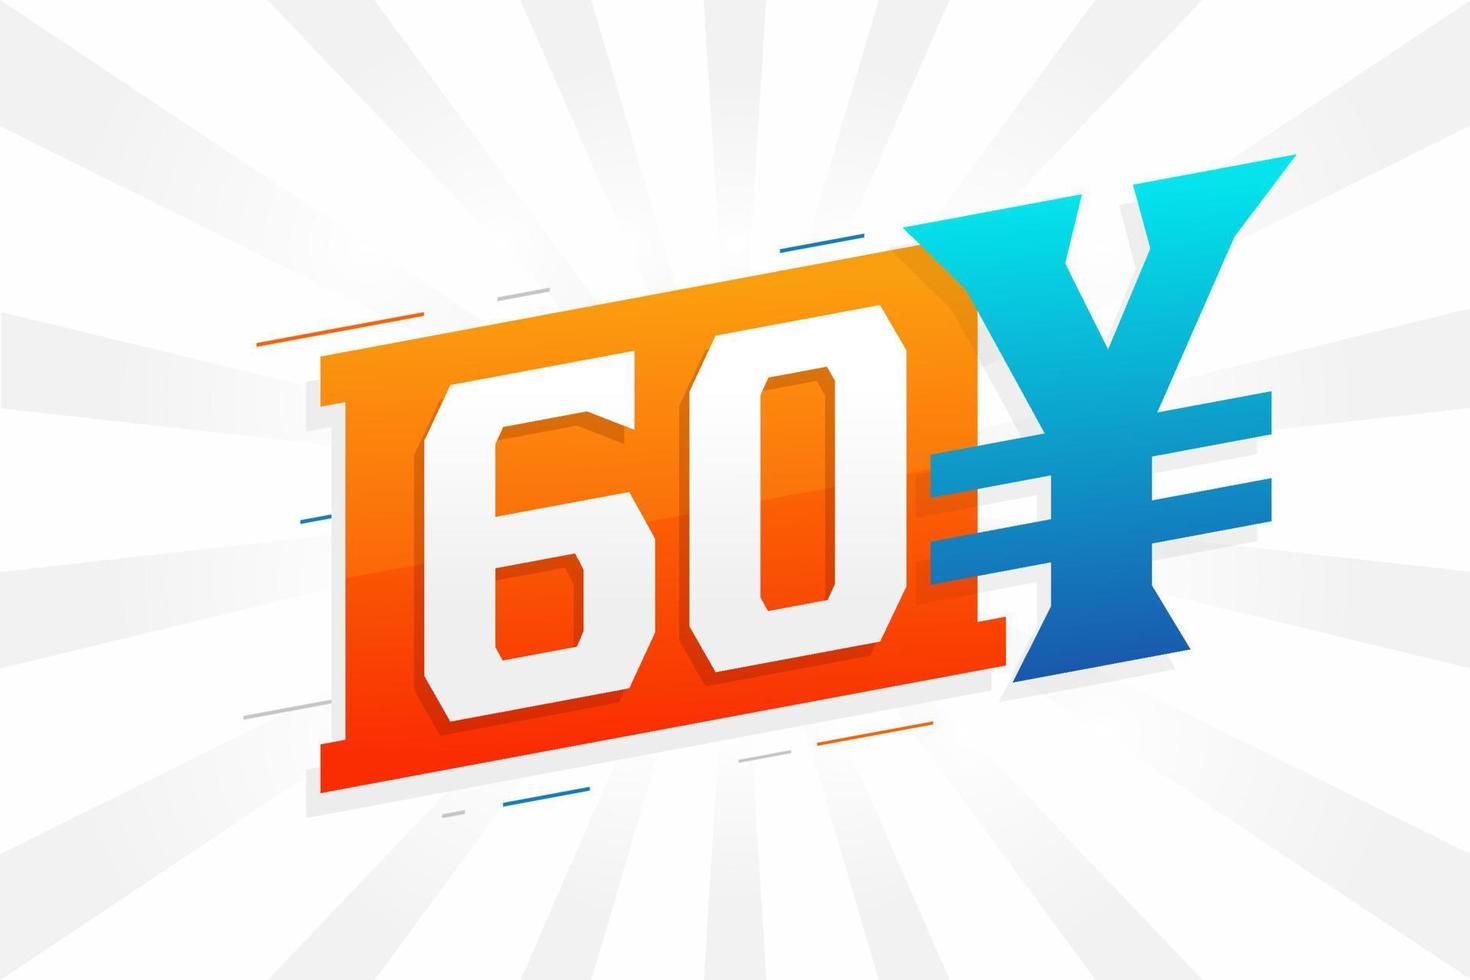 Símbolo de texto vectorial de moneda china de 60 yuanes. 60 yen moneda japonesa dinero stock vector